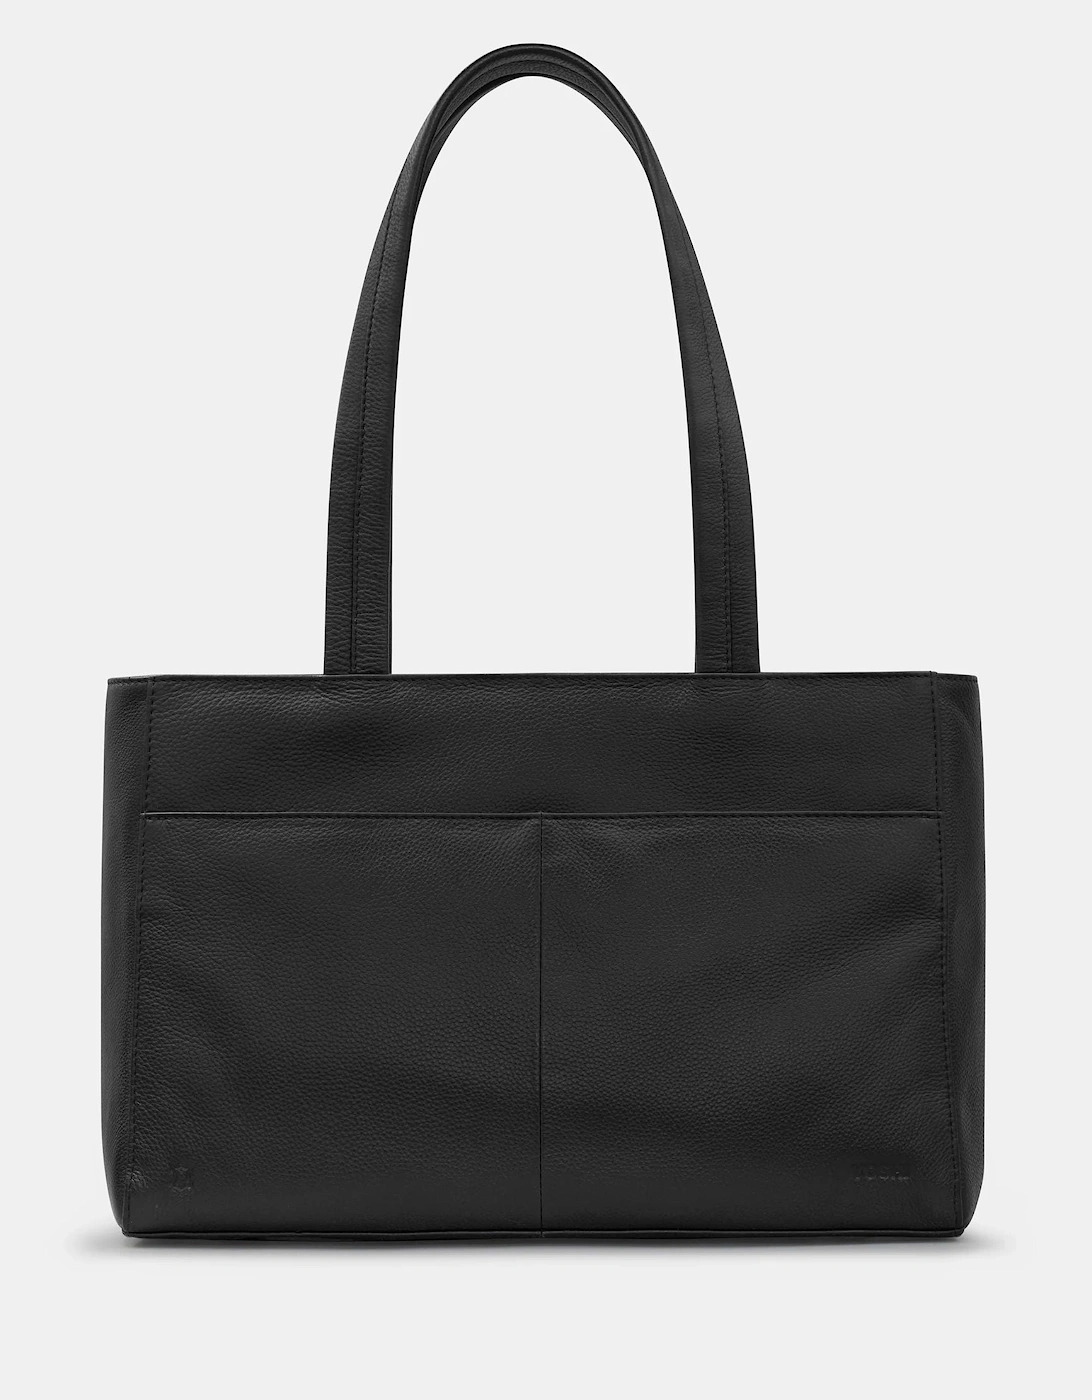 Harrington Leather Shoulder bag in black